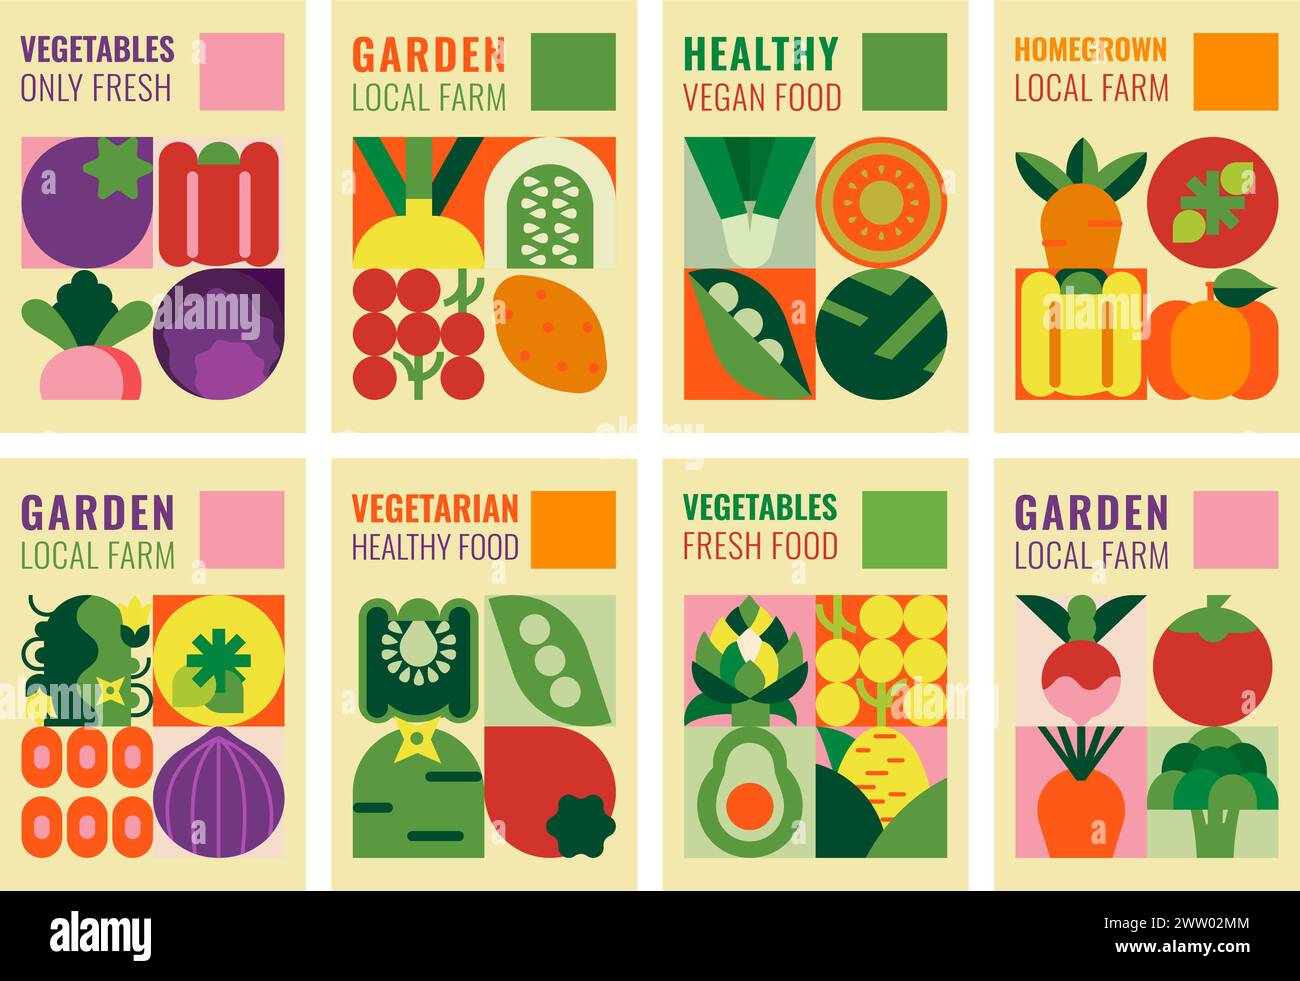 Collection d'affiches avec des légumes. Illustrations de produits biologiques frais. Idéal pour la publicité, la promotion d'une alimentation saine, des événements culinaires Illustration de Vecteur